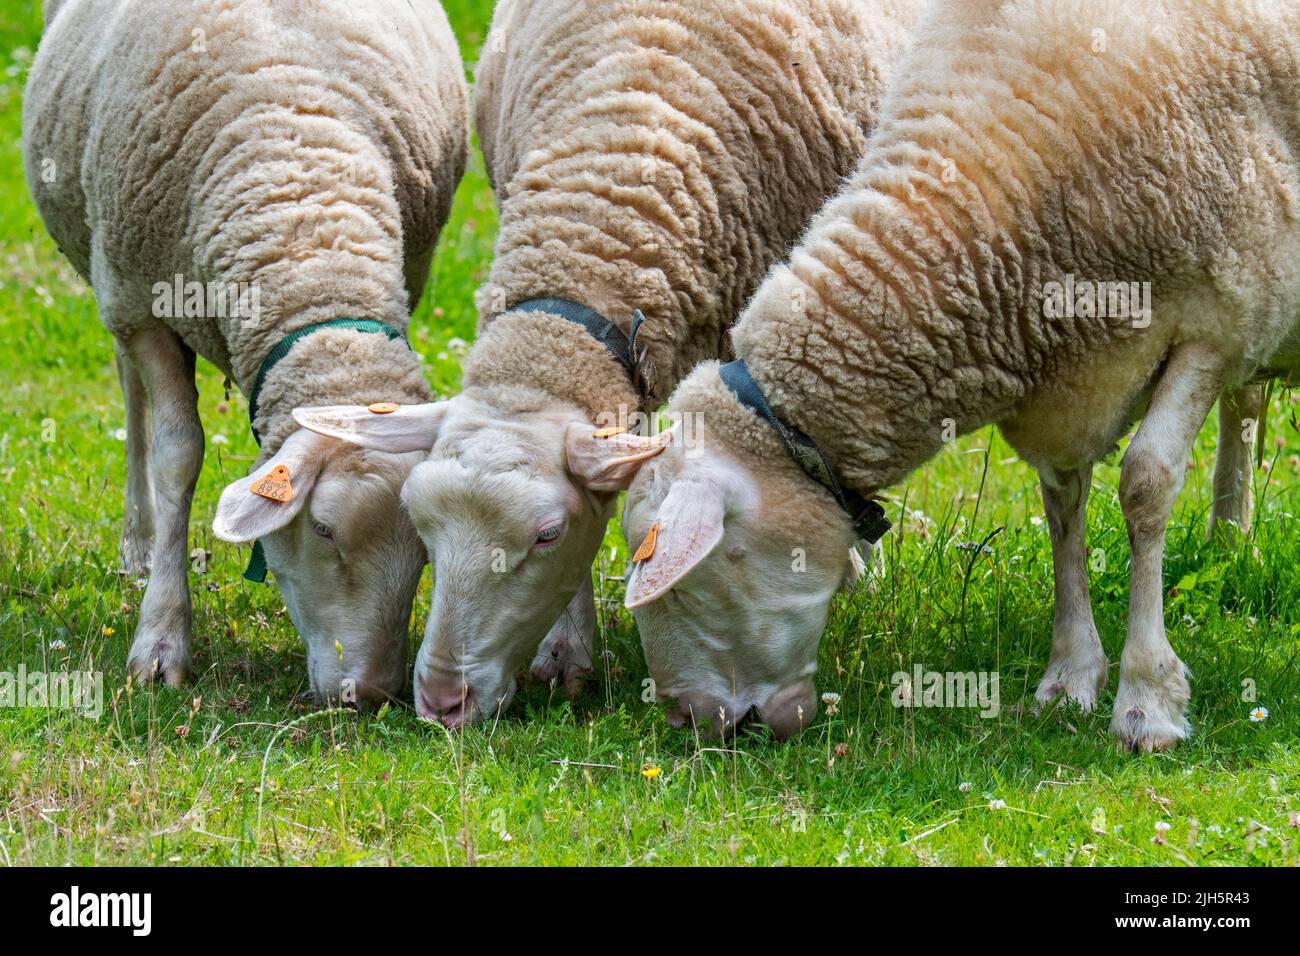 Trois moutons laitiers blancs balisés paissant de l'herbe dans les prairies / champs / prairies à la ferme Banque D'Images